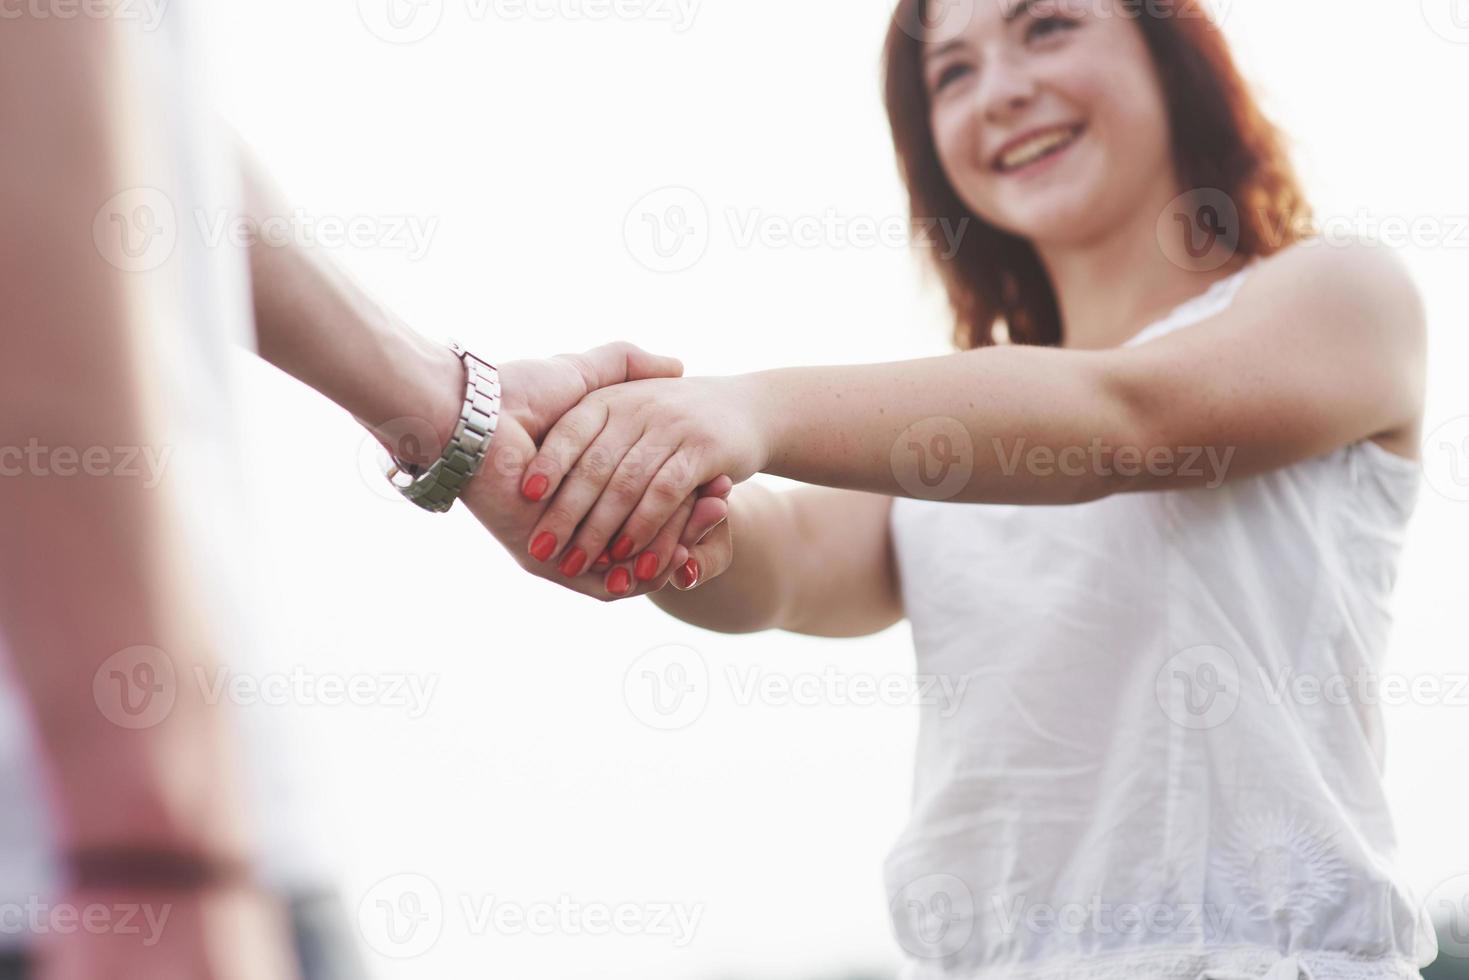 mooi meisje dat de hand van haar vriendje vasthoudt. foto